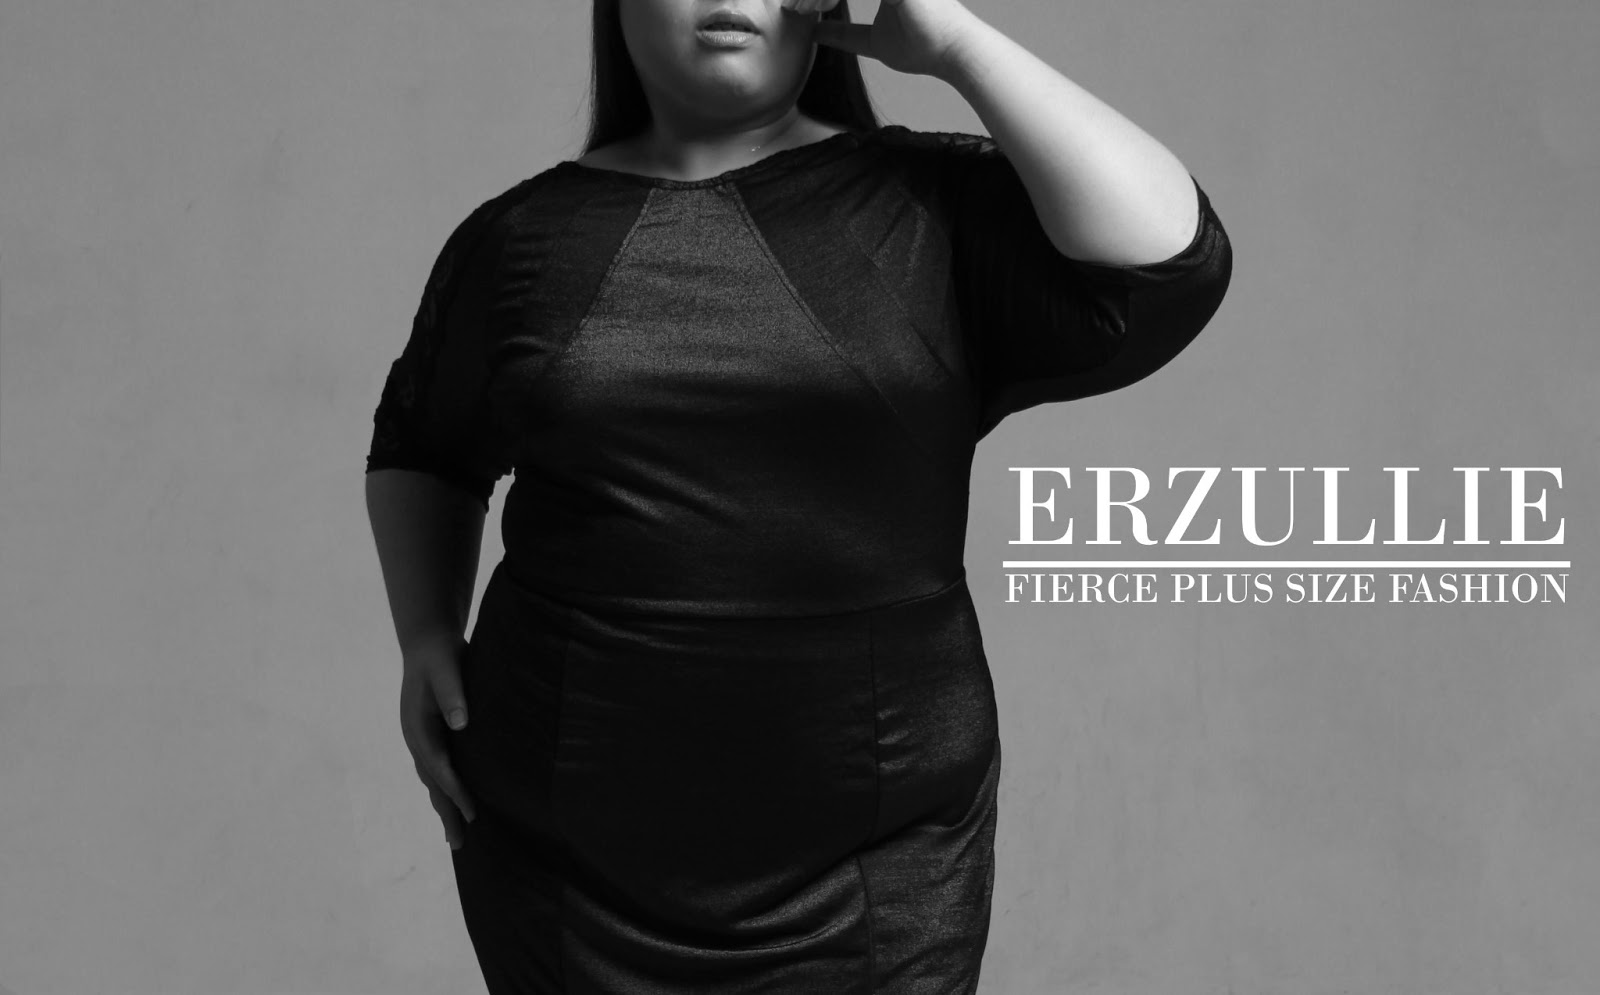 Erzullie Fierce Plus Size Fashion Philippines: The Brand